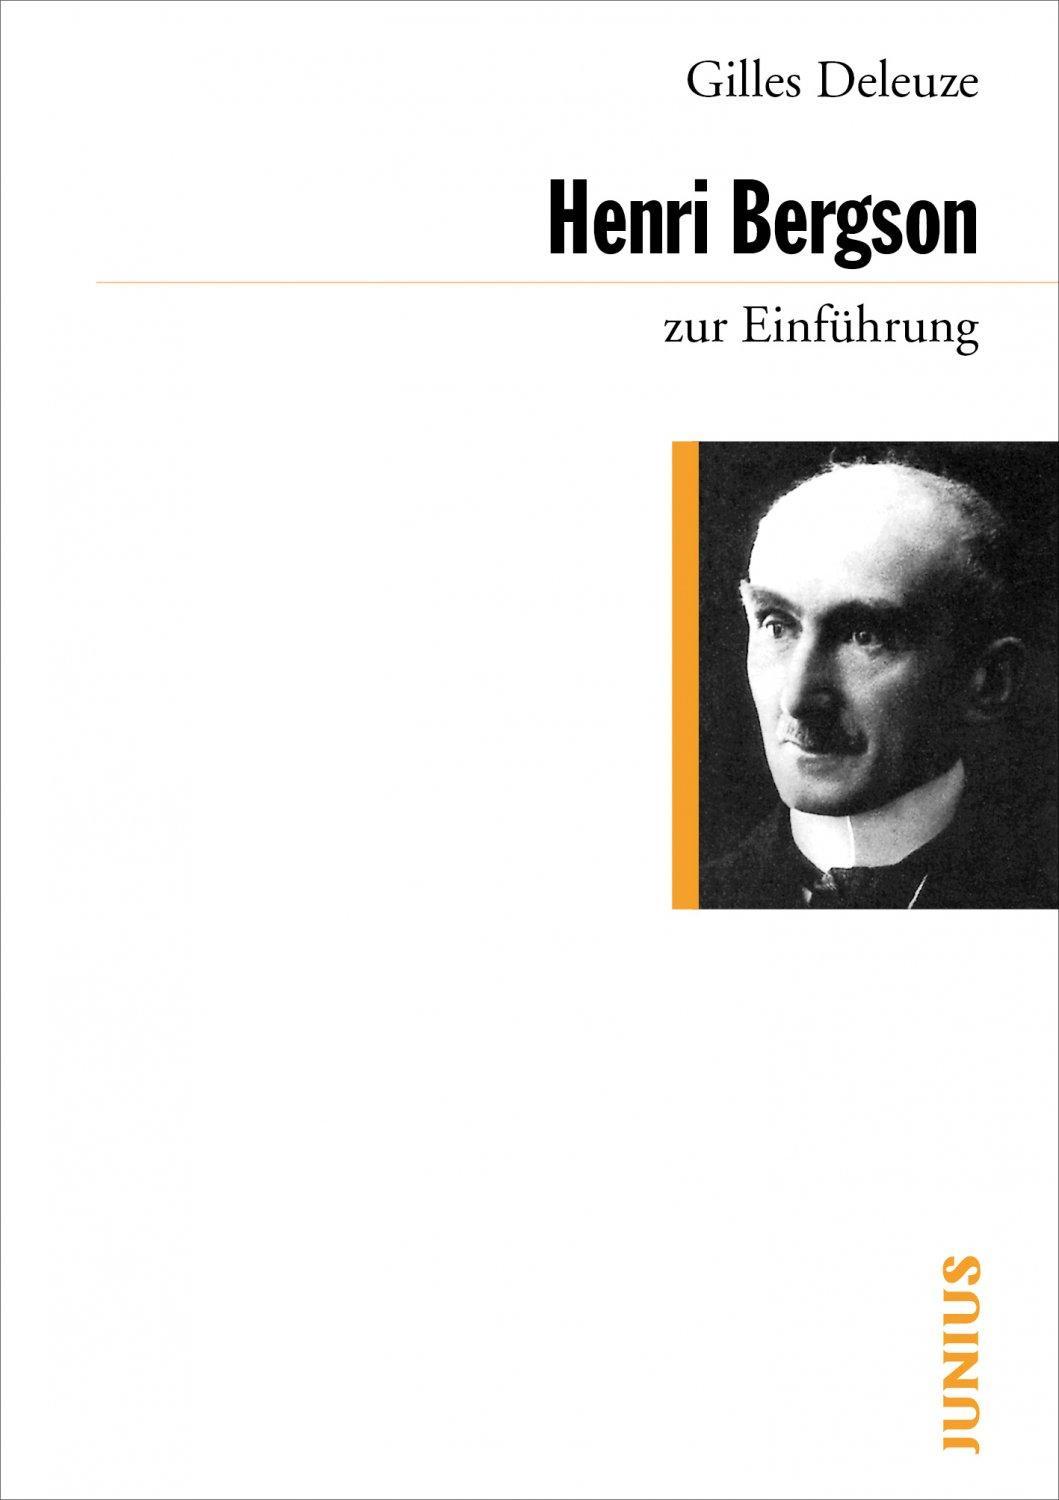 Gilles Deleuze, Martin Weinmann: Henri Bergson zur Einführung (German language, 2007, Junius Verlag)